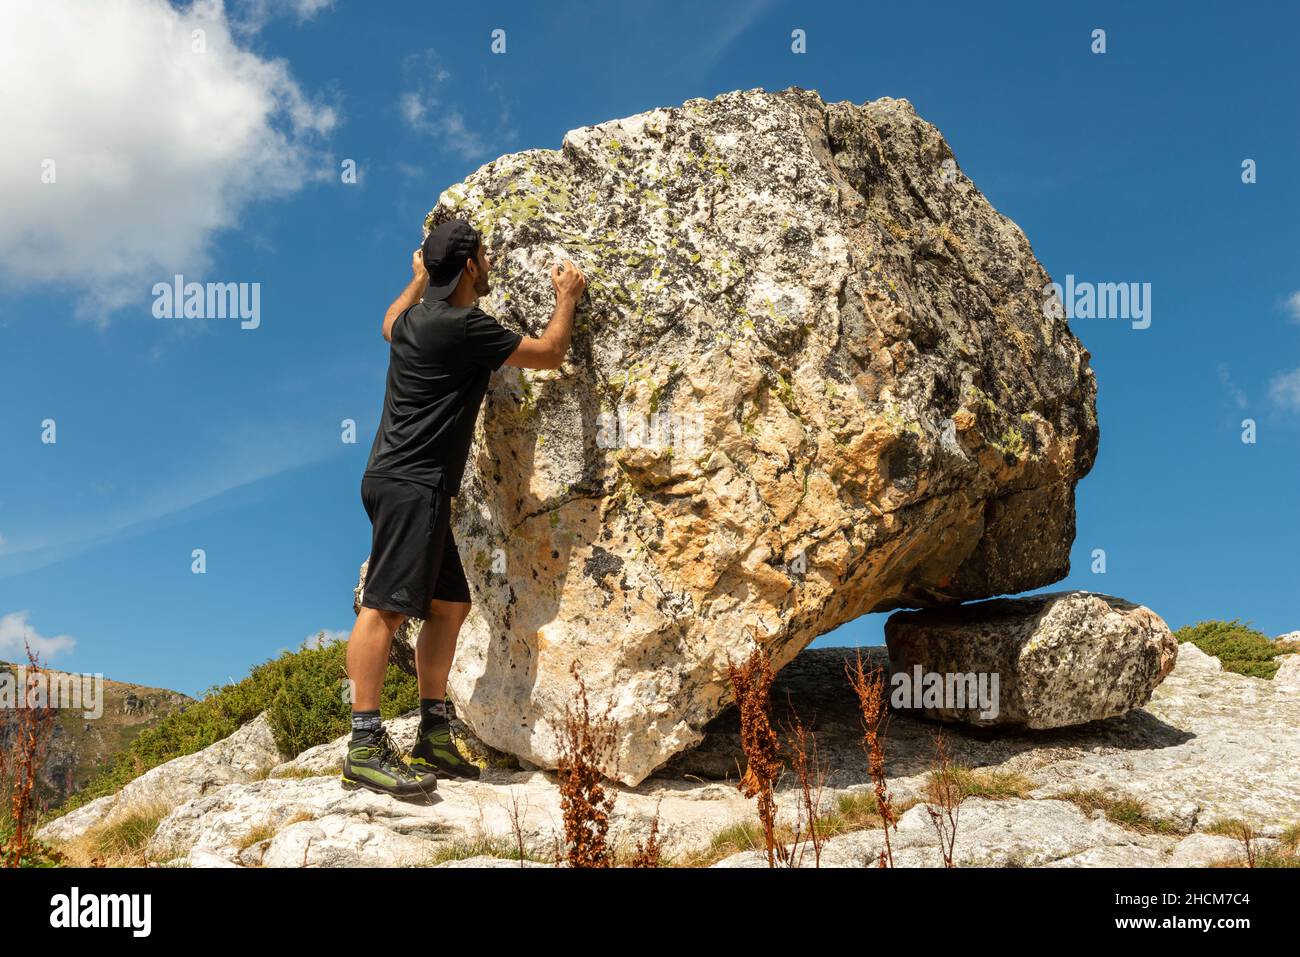 Randonneur mâle à un rocher erratique glaciaire qui équilibre sur la formation de roches de Sheepback au cirque glaciaire des sept lacs Rila, Bulgarie, Balkans Banque D'Images